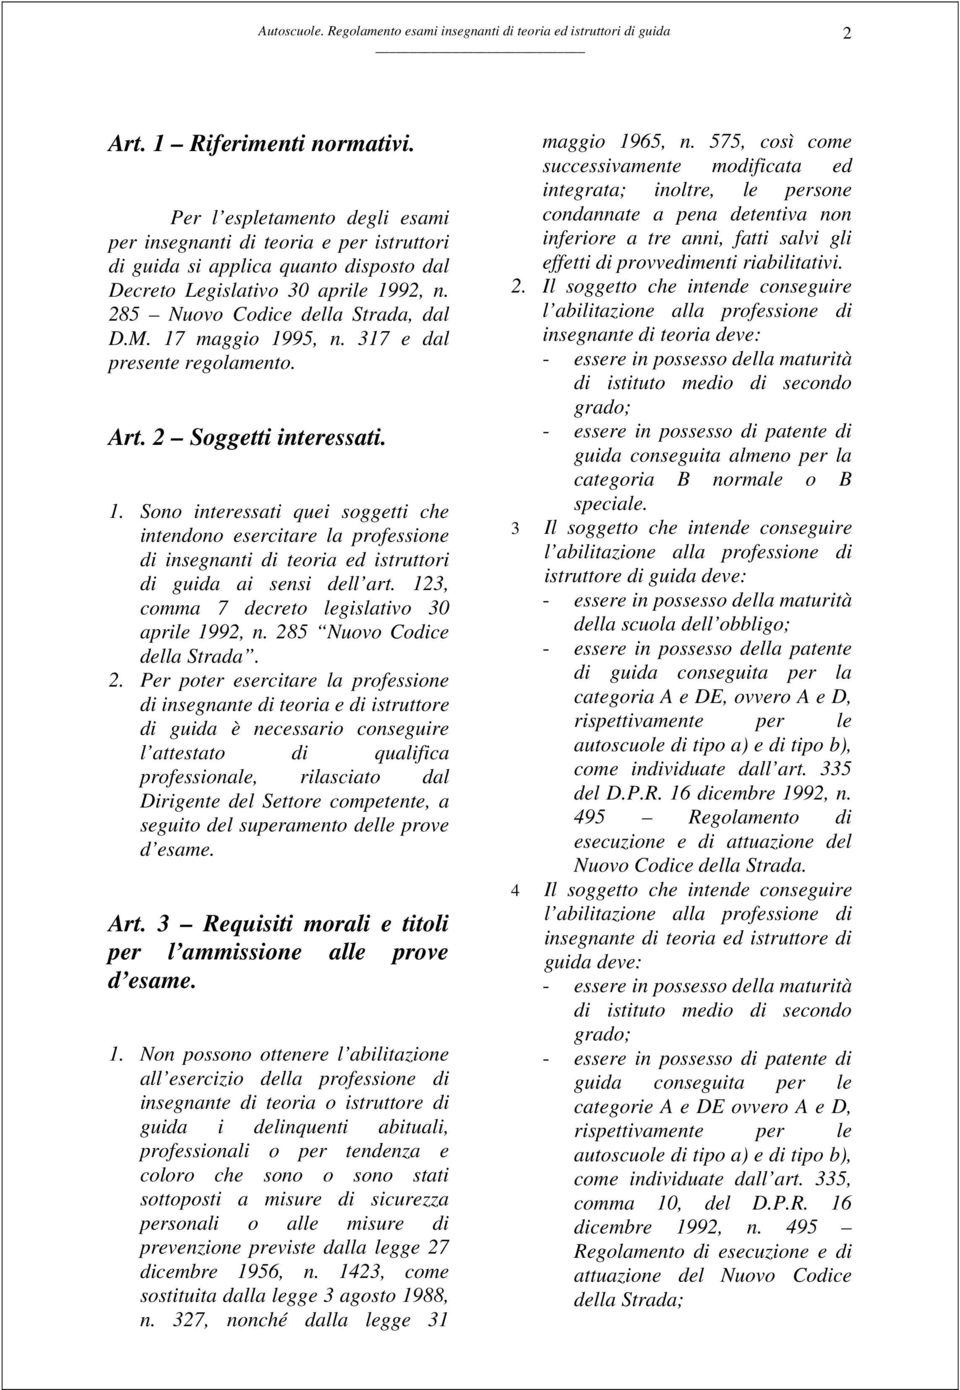 123, comma 7 decreto legislativo 30 aprile 1992, n. 28